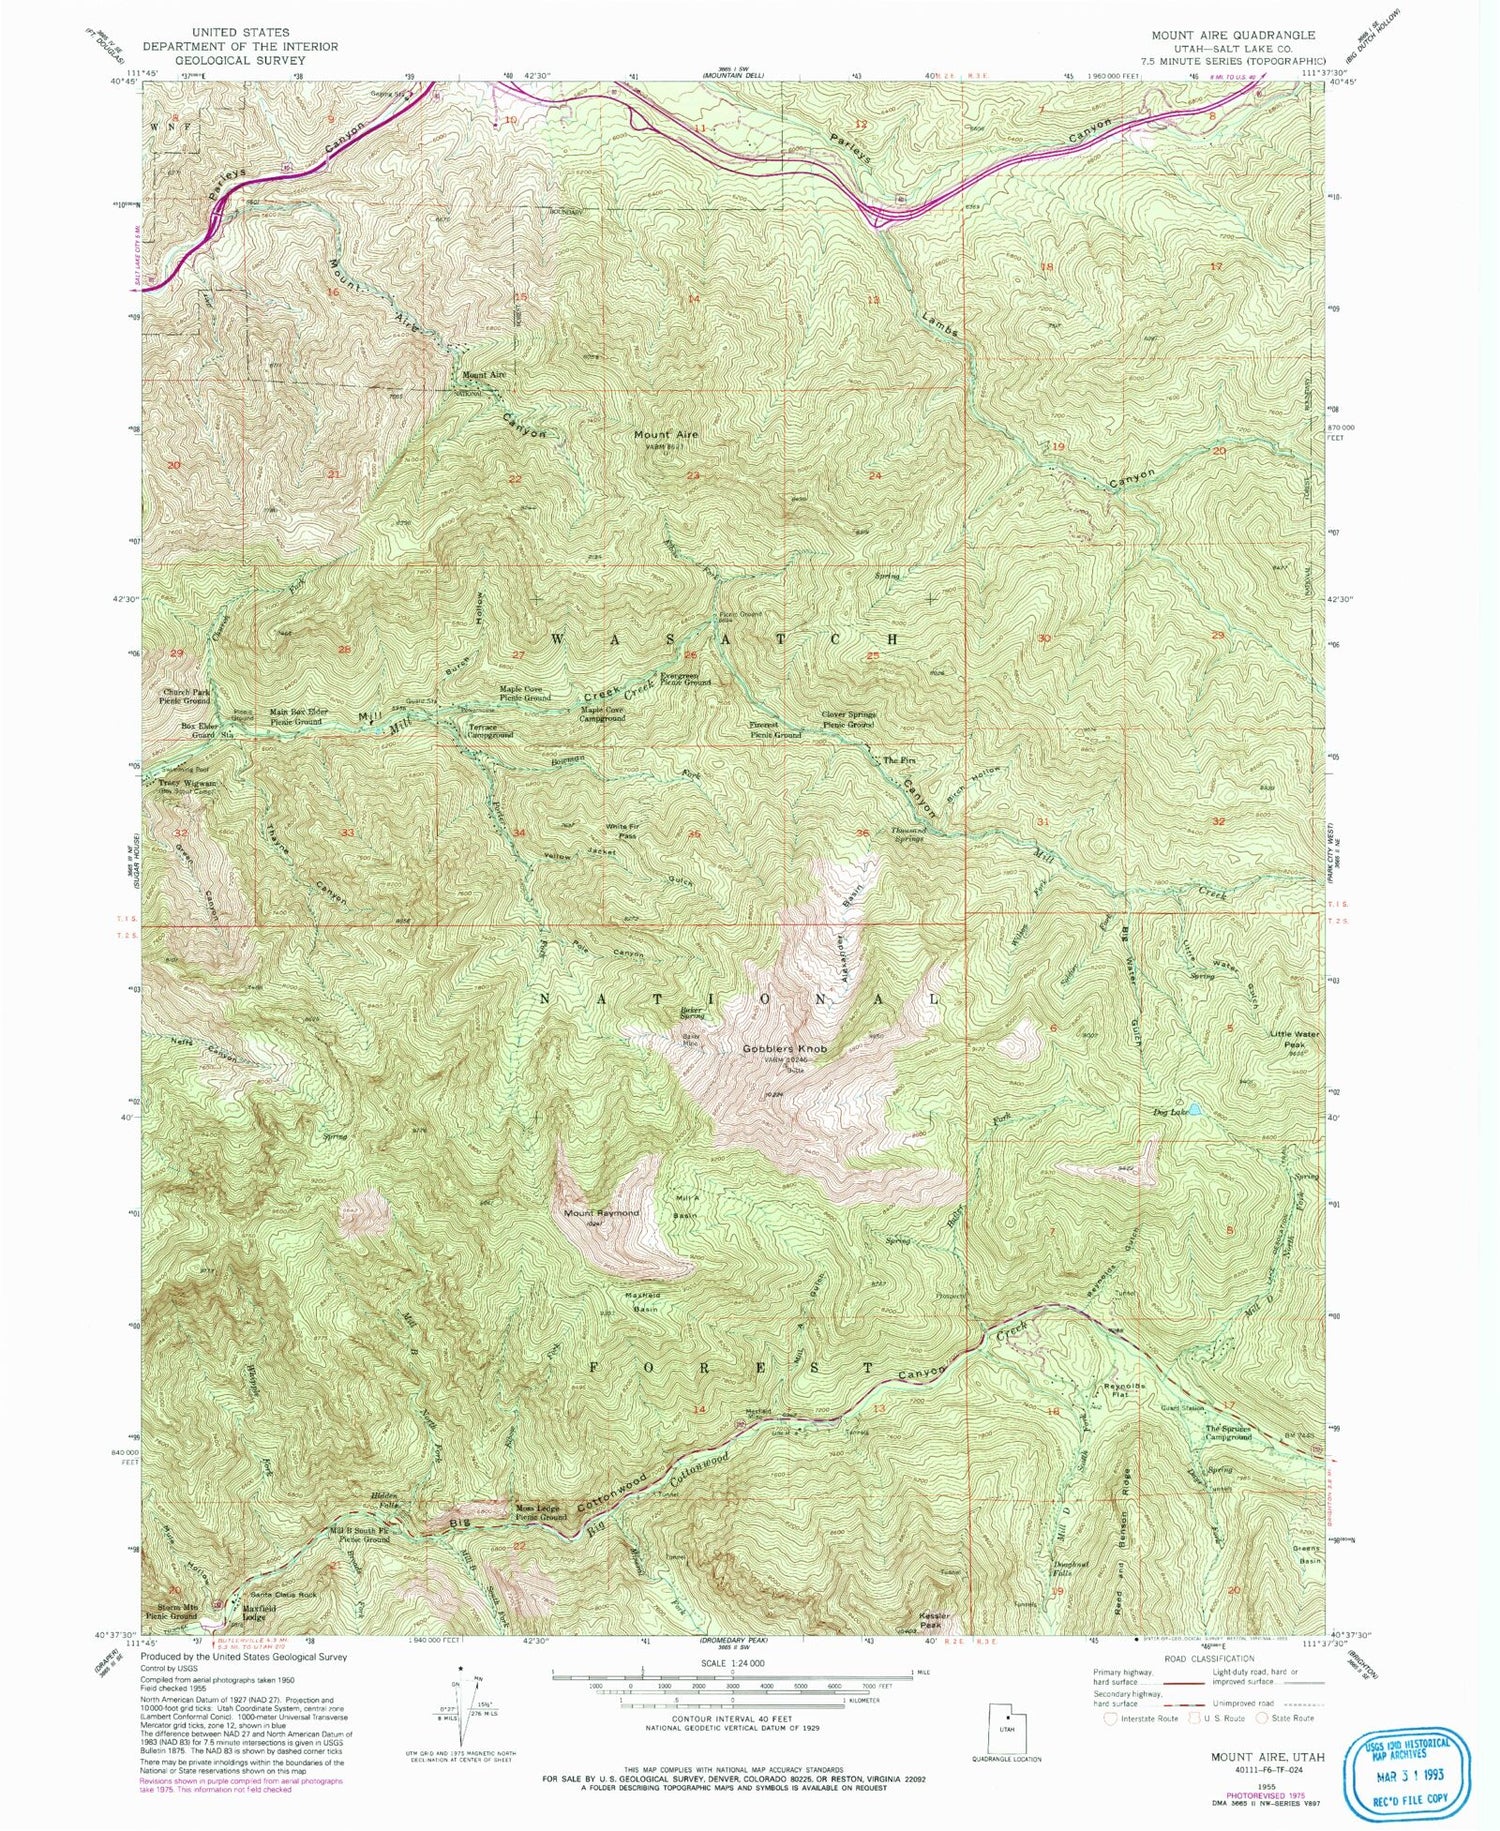 USGS Classic Mount Aire Utah 7.5'x7.5' Topo Map Image